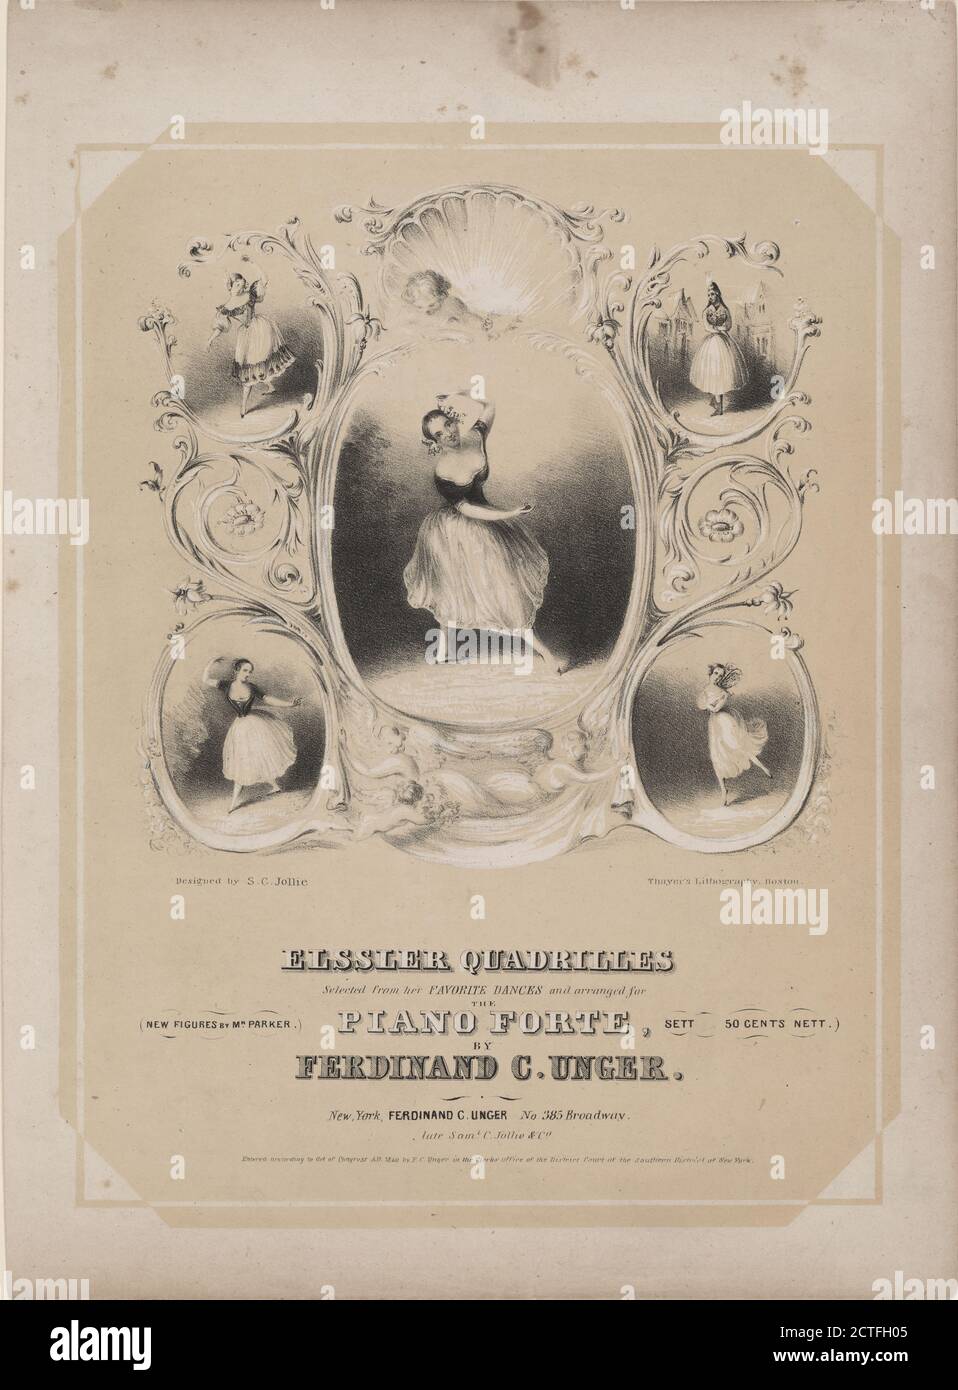 Elssler quadrilles, sélectionné parmi ses danses préférées., image fixe, estampes, 1840 Banque D'Images